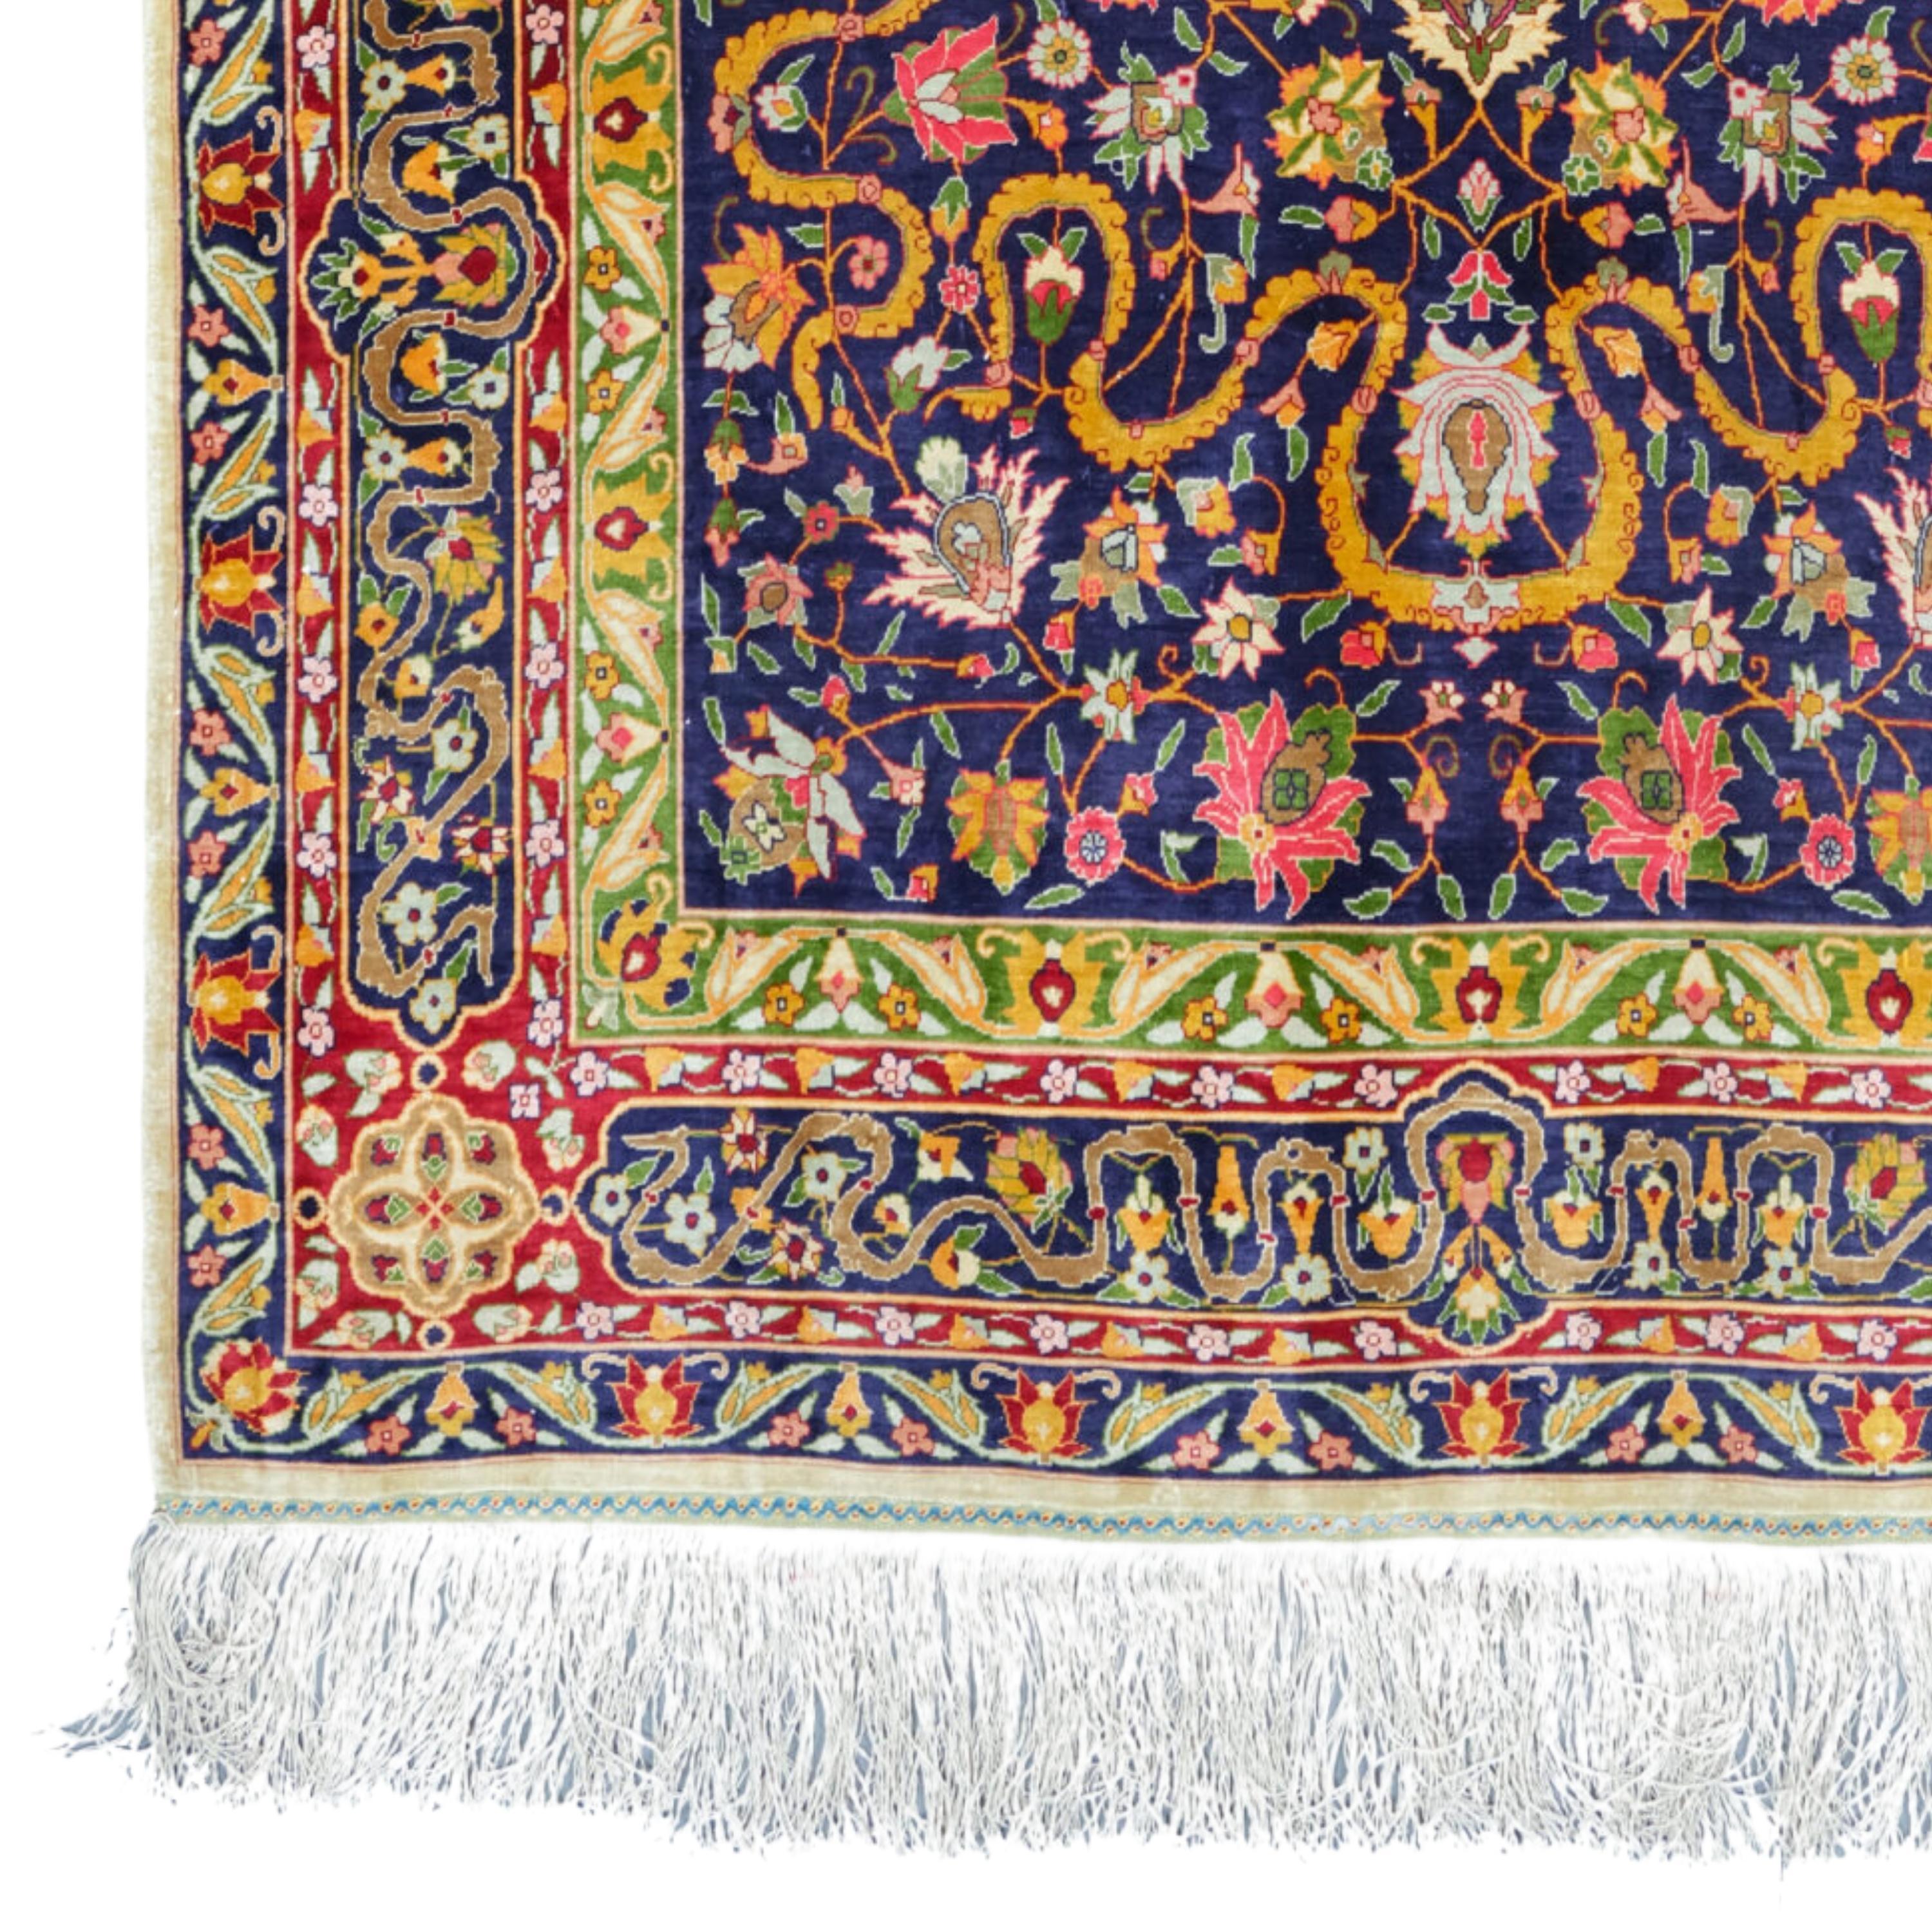 Antiker Hereke Seidenteppich - Türkischer Hereke Seidenteppich Ende 20. Jahrhundert 100x165 cm (39,3 x 64,9 In)

Hereke-Teppich, Bodenbelag, der in den kaiserlichen Werkstätten in Hereke, etwa 64 km östlich von Istanbul, im späten 19.